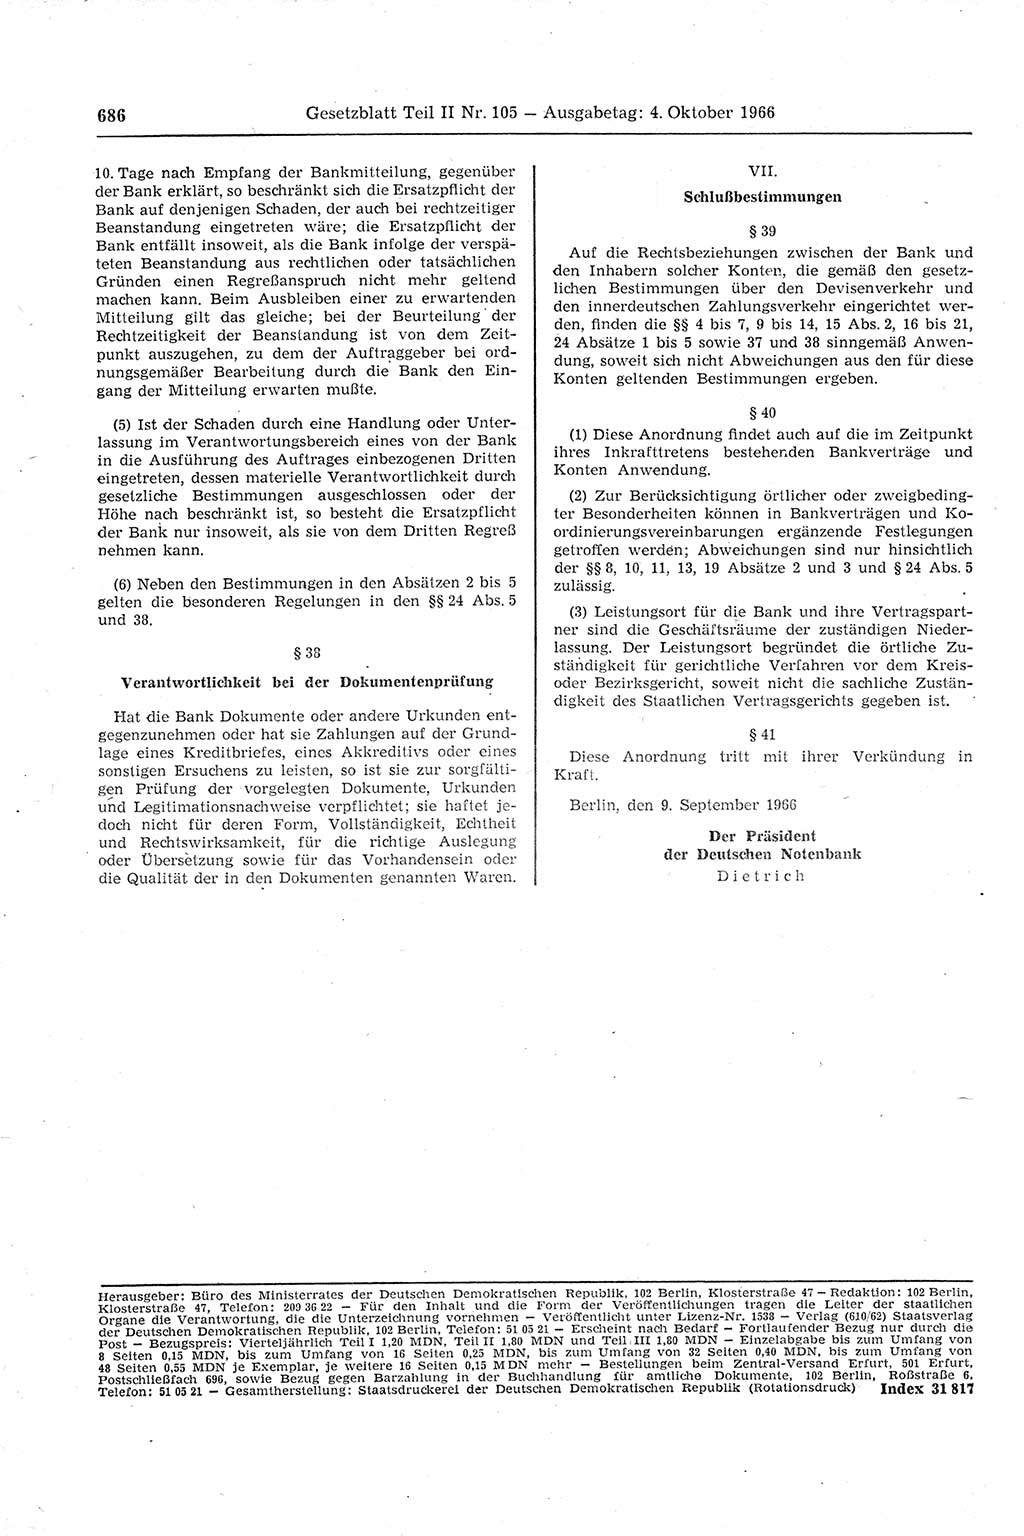 Gesetzblatt (GBl.) der Deutschen Demokratischen Republik (DDR) Teil ⅠⅠ 1966, Seite 686 (GBl. DDR ⅠⅠ 1966, S. 686)